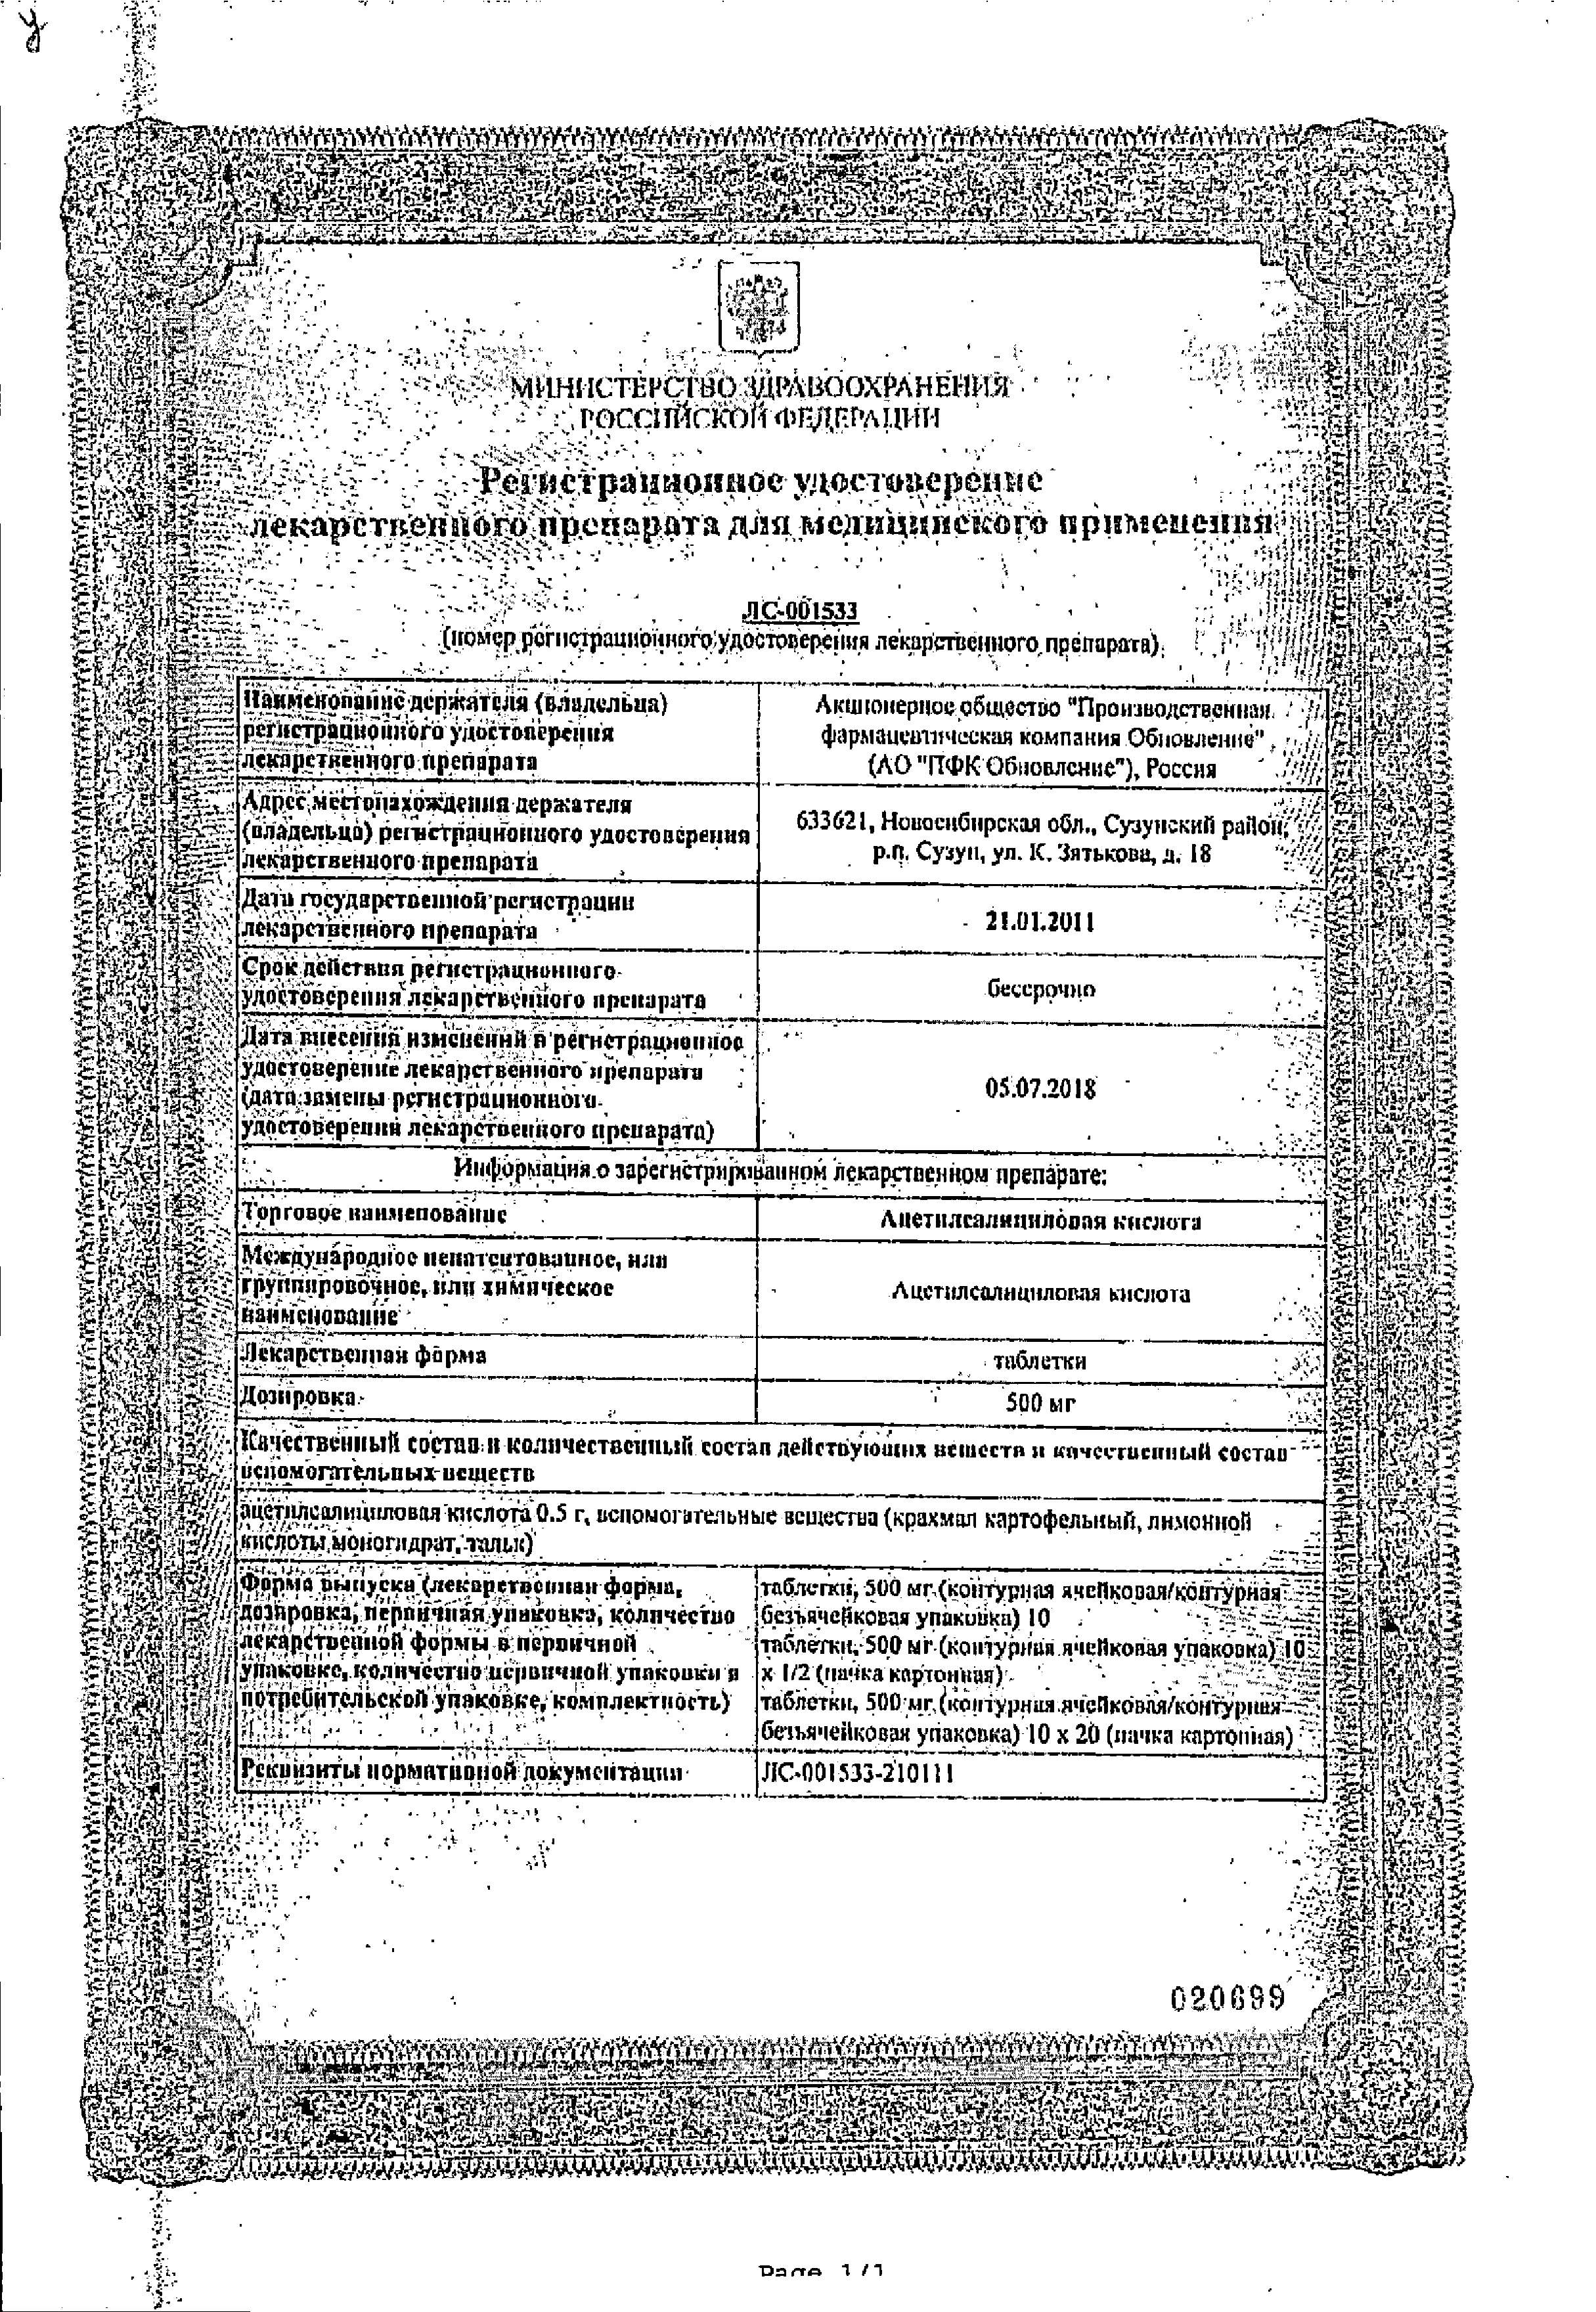 Ацетилсалициловая кислота Реневал сертификат